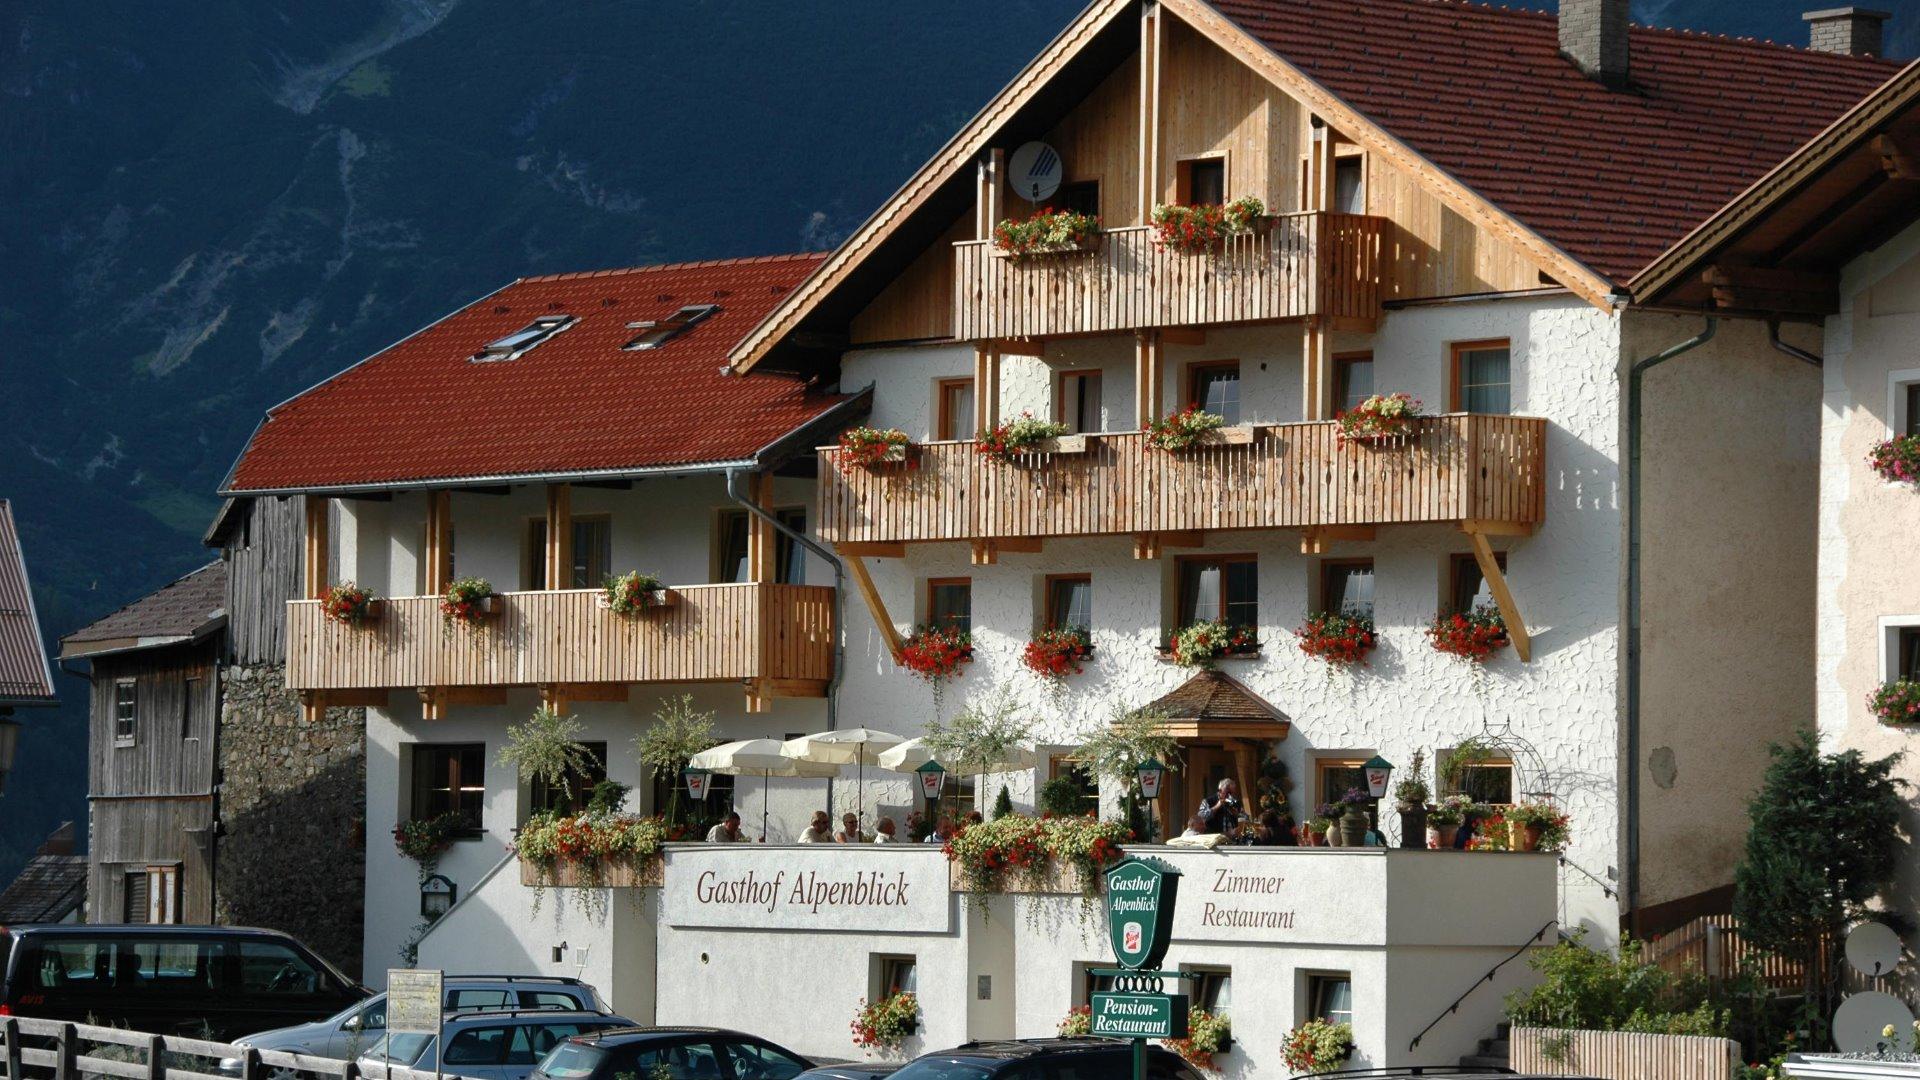 Gasthof Alpenblick #Willkommen#Bildergalerie#Wohneinheiten#Preise#Anfragen#Buchen#impressum#Sitemap#Winter#Sommer